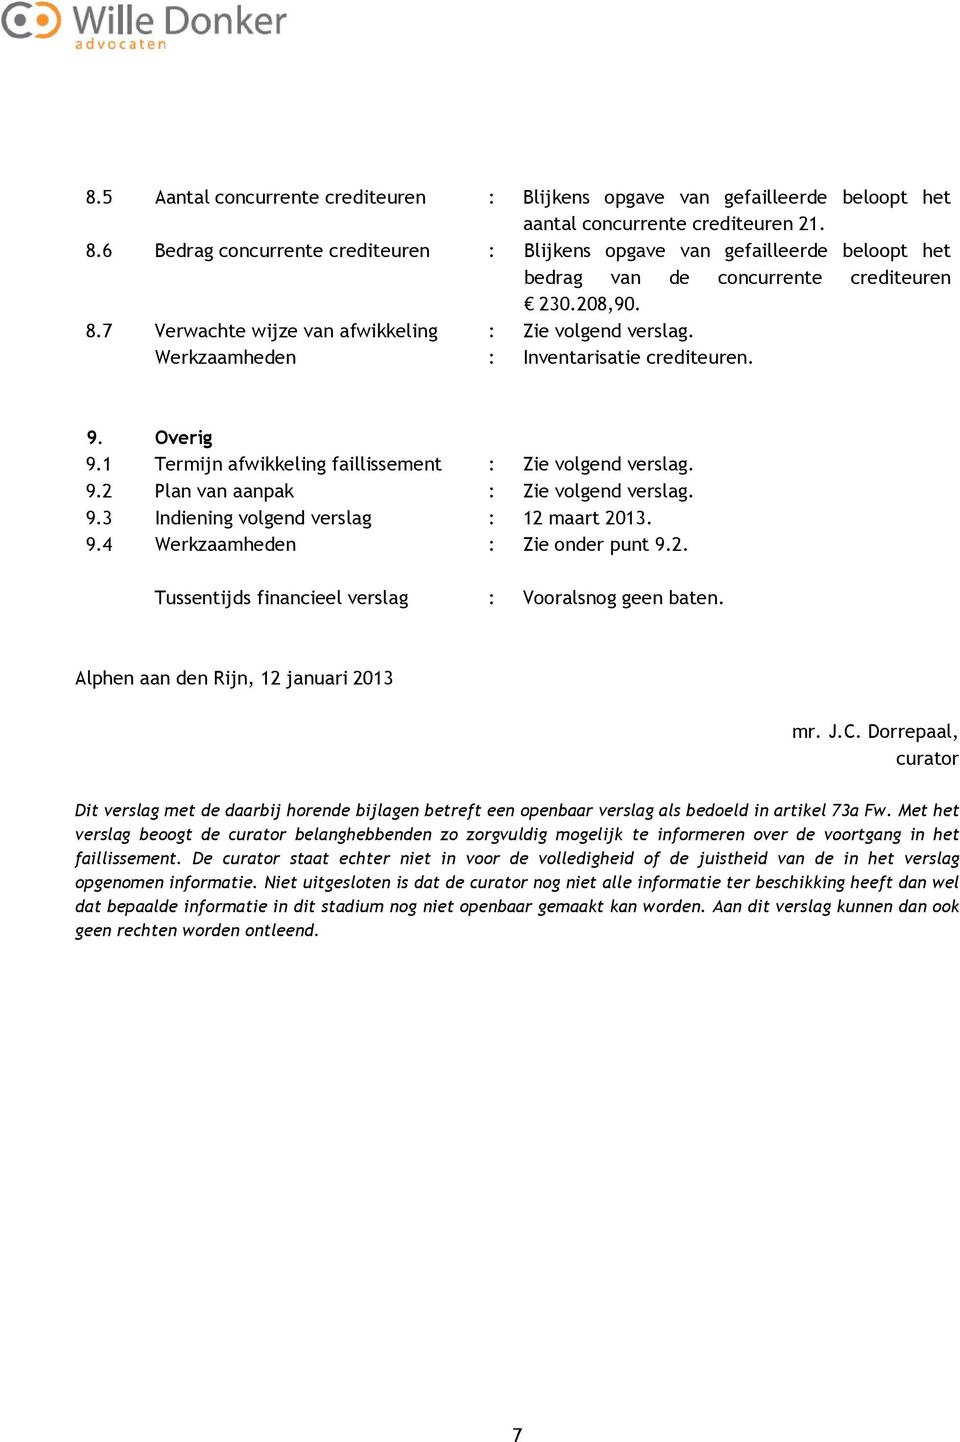 Werkzaamheden : Inventarisatie crediteuren. 9. Overig 9.1 Termijn afwikkeling faillissement : Zie volgend verslag. 9.2 Plan van aanpak : Zie volgend verslag. 9.3 Indiening volgend verslag : 12 maart 2013.